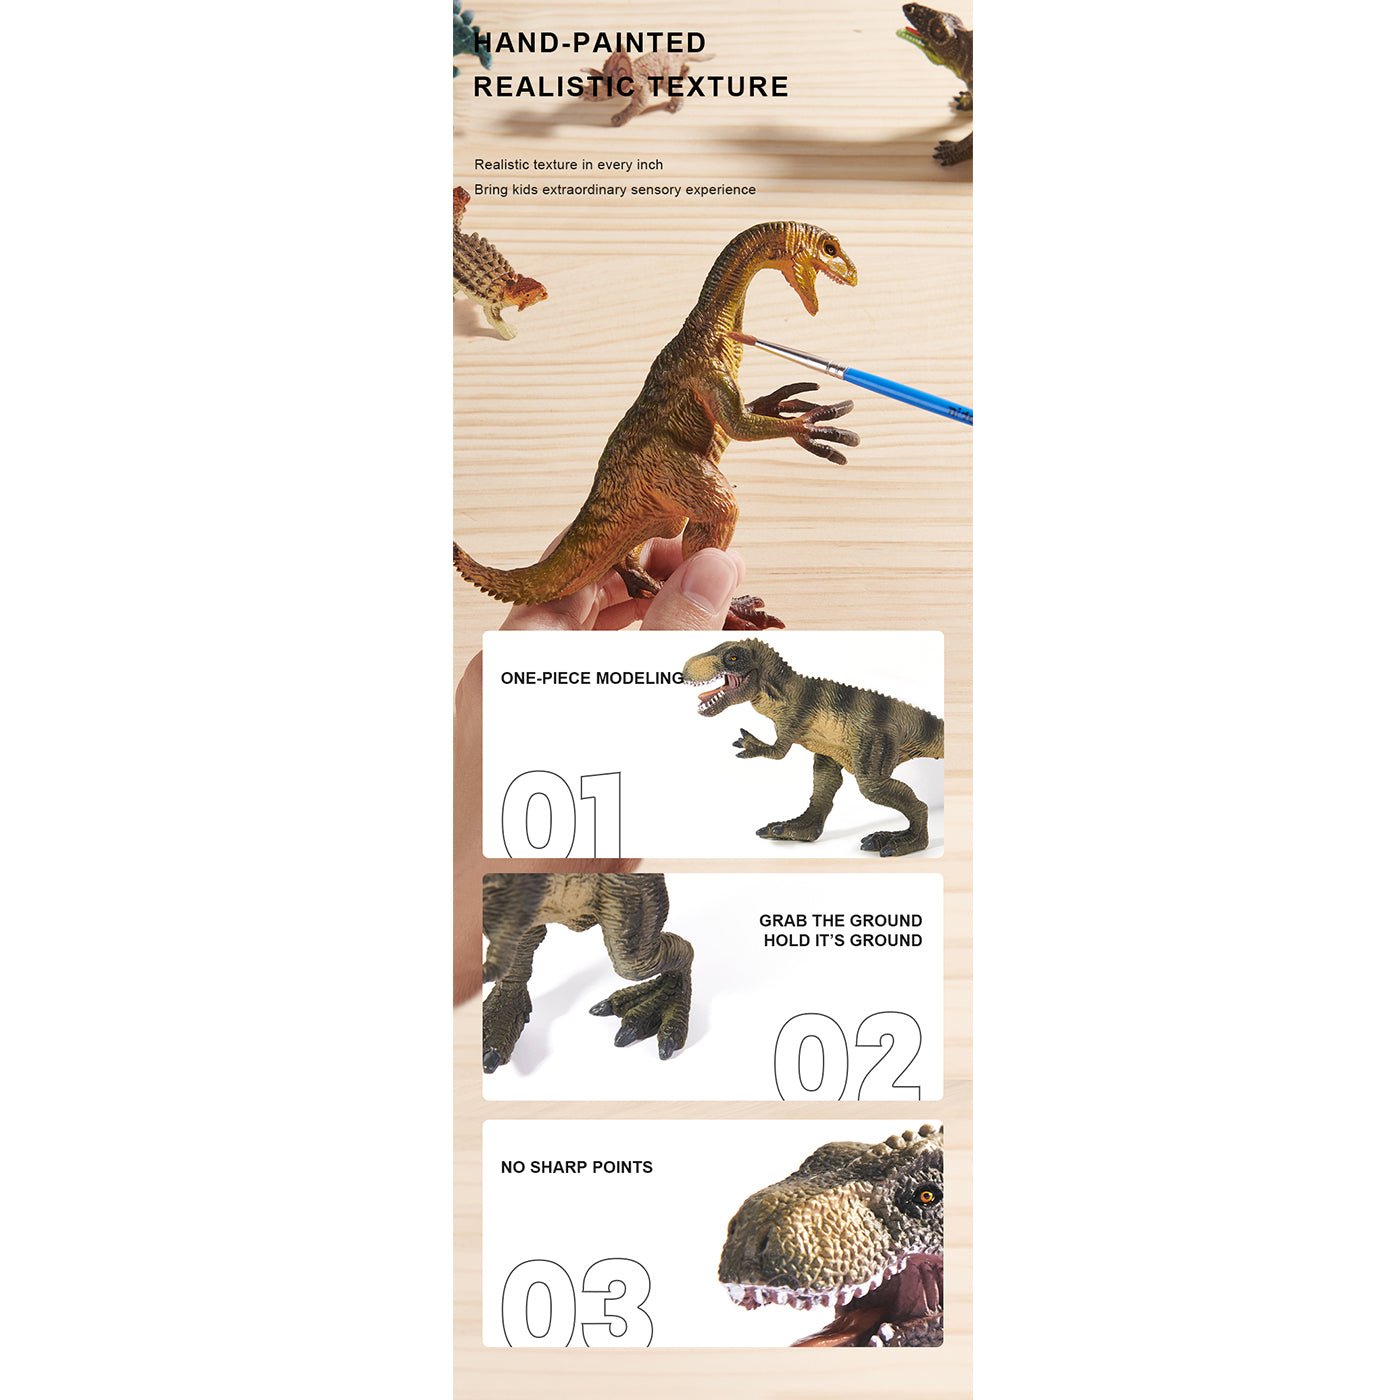 Dinosaur Toys Set 24pcs - 0cm